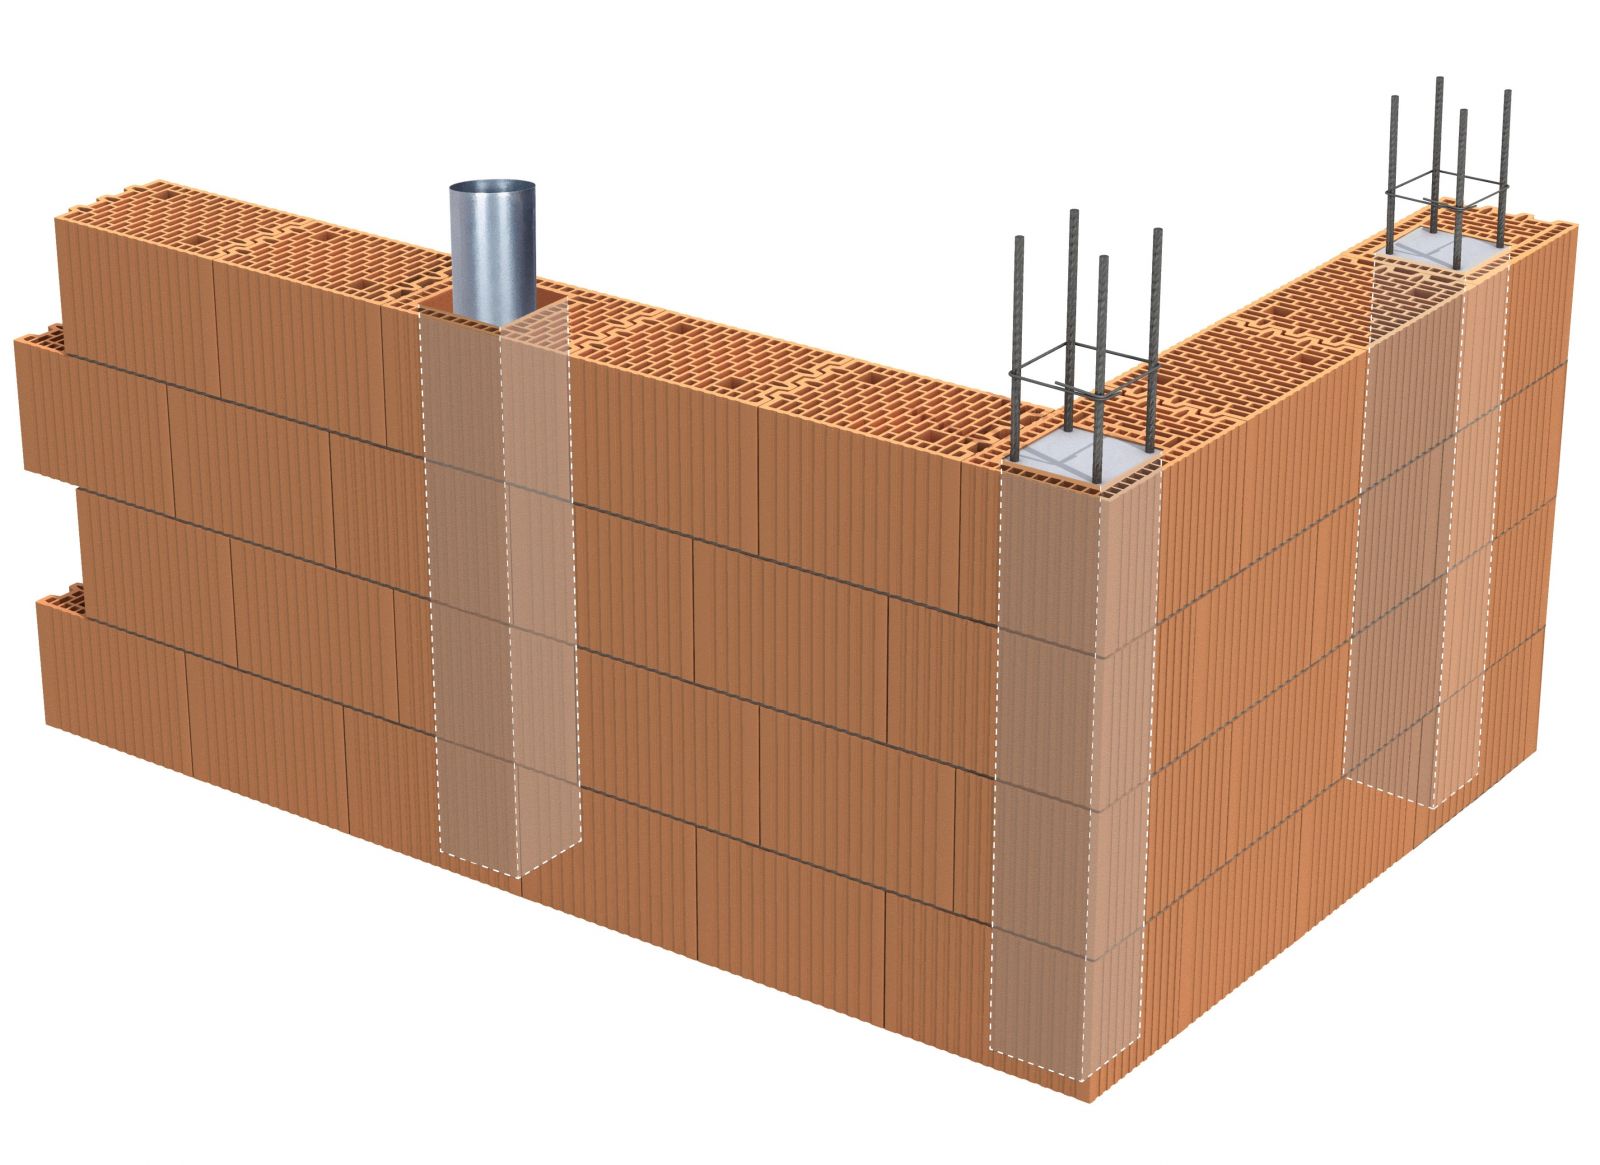 Porotherm 25 K P+W to pustak ceramiczny z kwadratowym otworem przelotowym, który pozwala szybko i wygodnie przygotować kanały o wymiarach 17 cm x 17 cm, przeznaczone pod instalacje elektryczne lub sanitarne albo pod wypełnienie betonem (rys. WIENERBERGER)